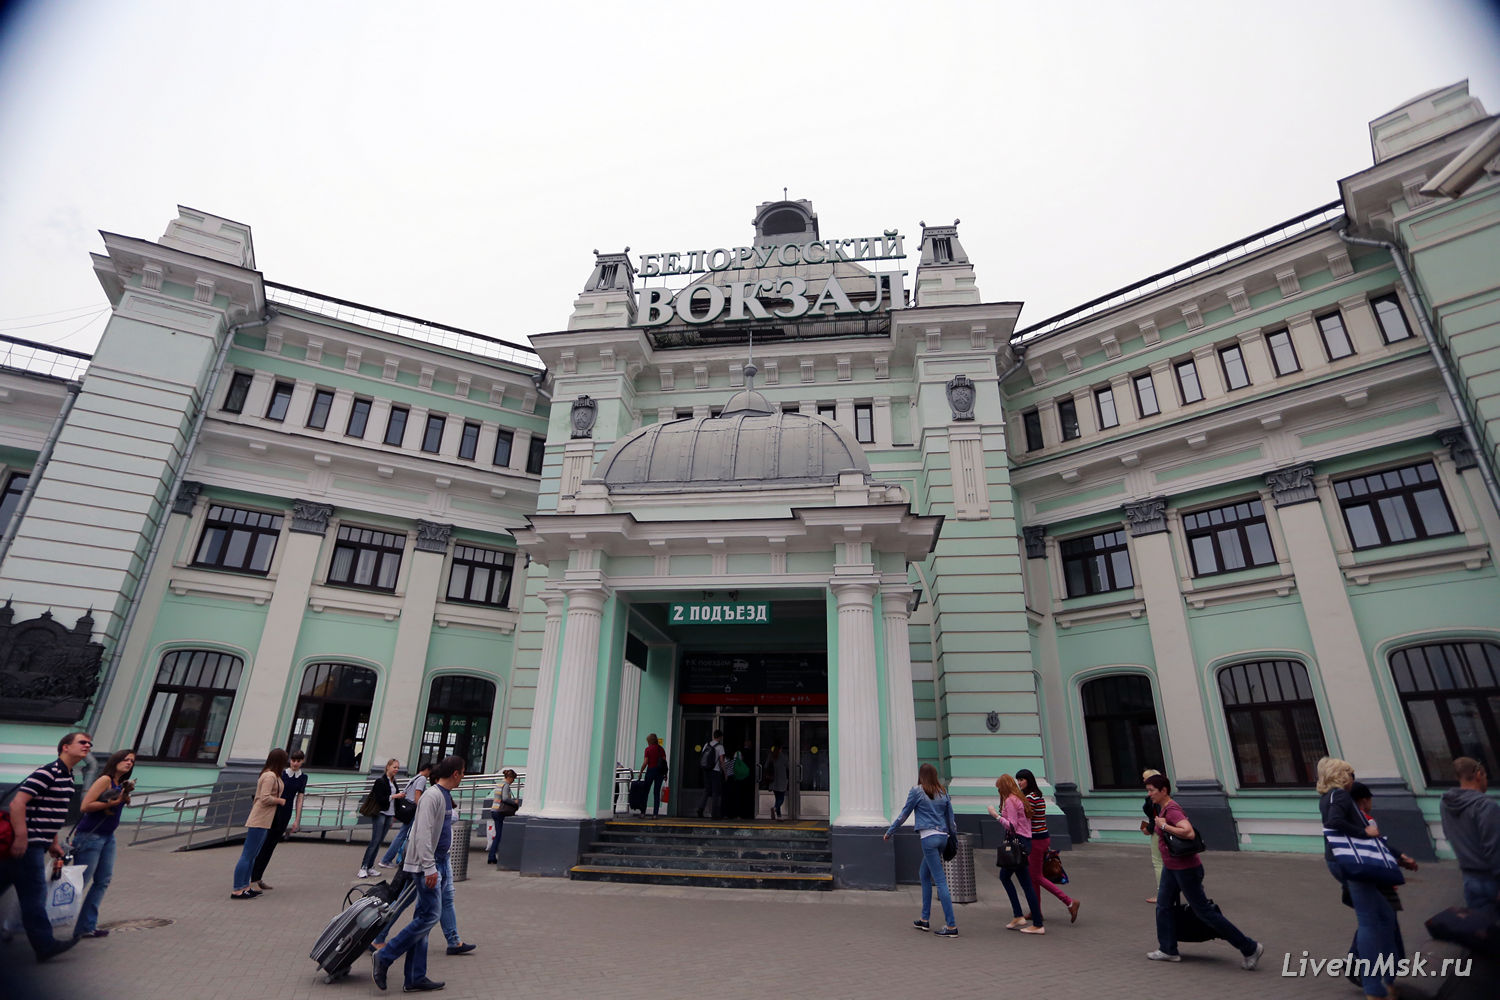 Белорусский вокзал, фото 2016 года